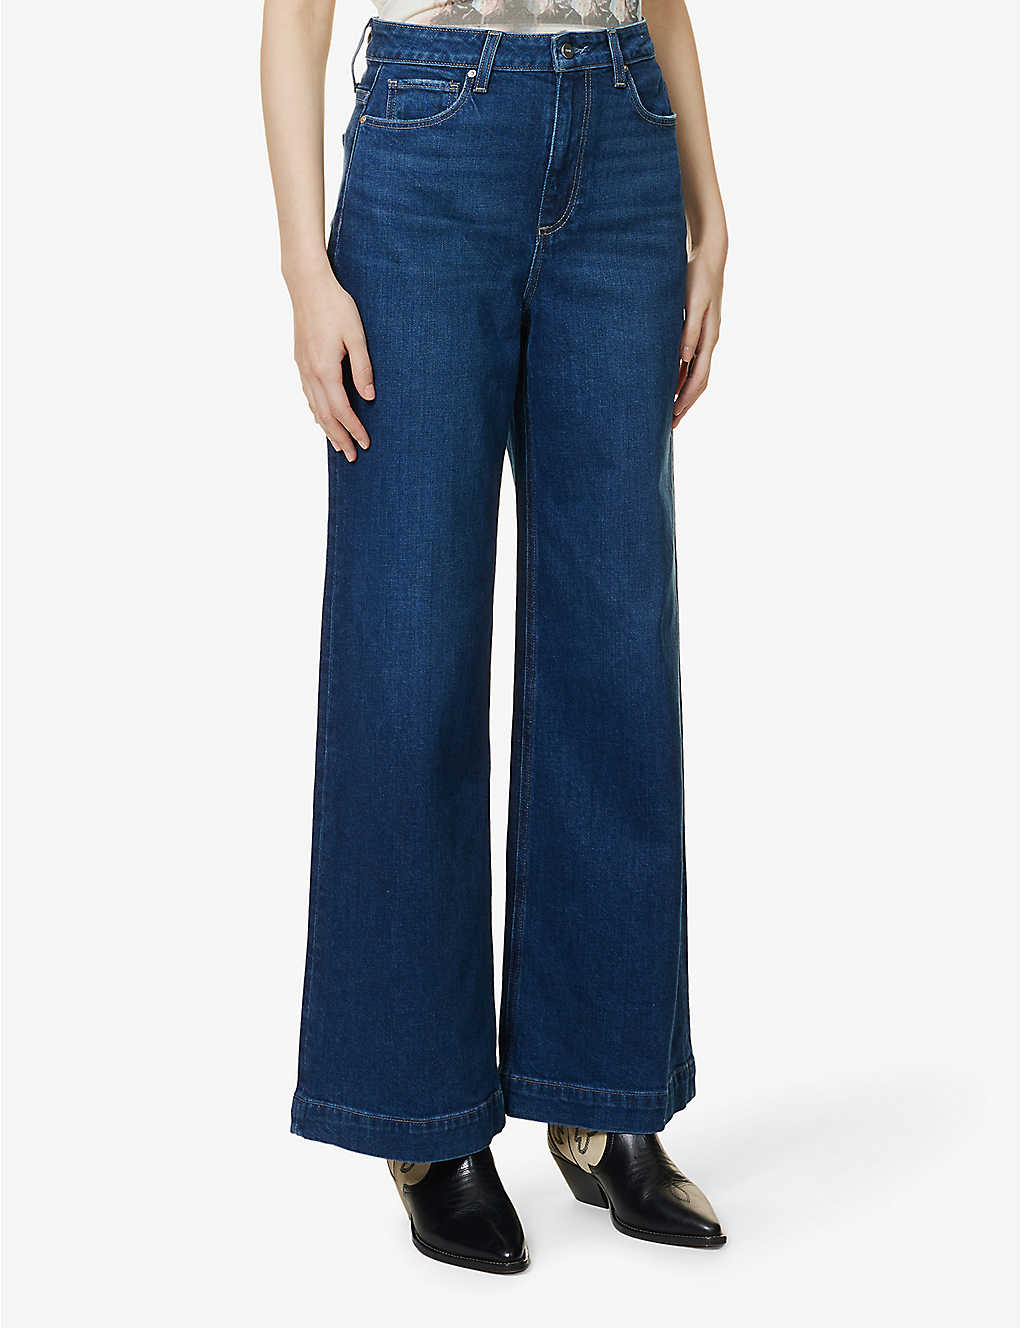 Wide leg dark blue wash full length jeans